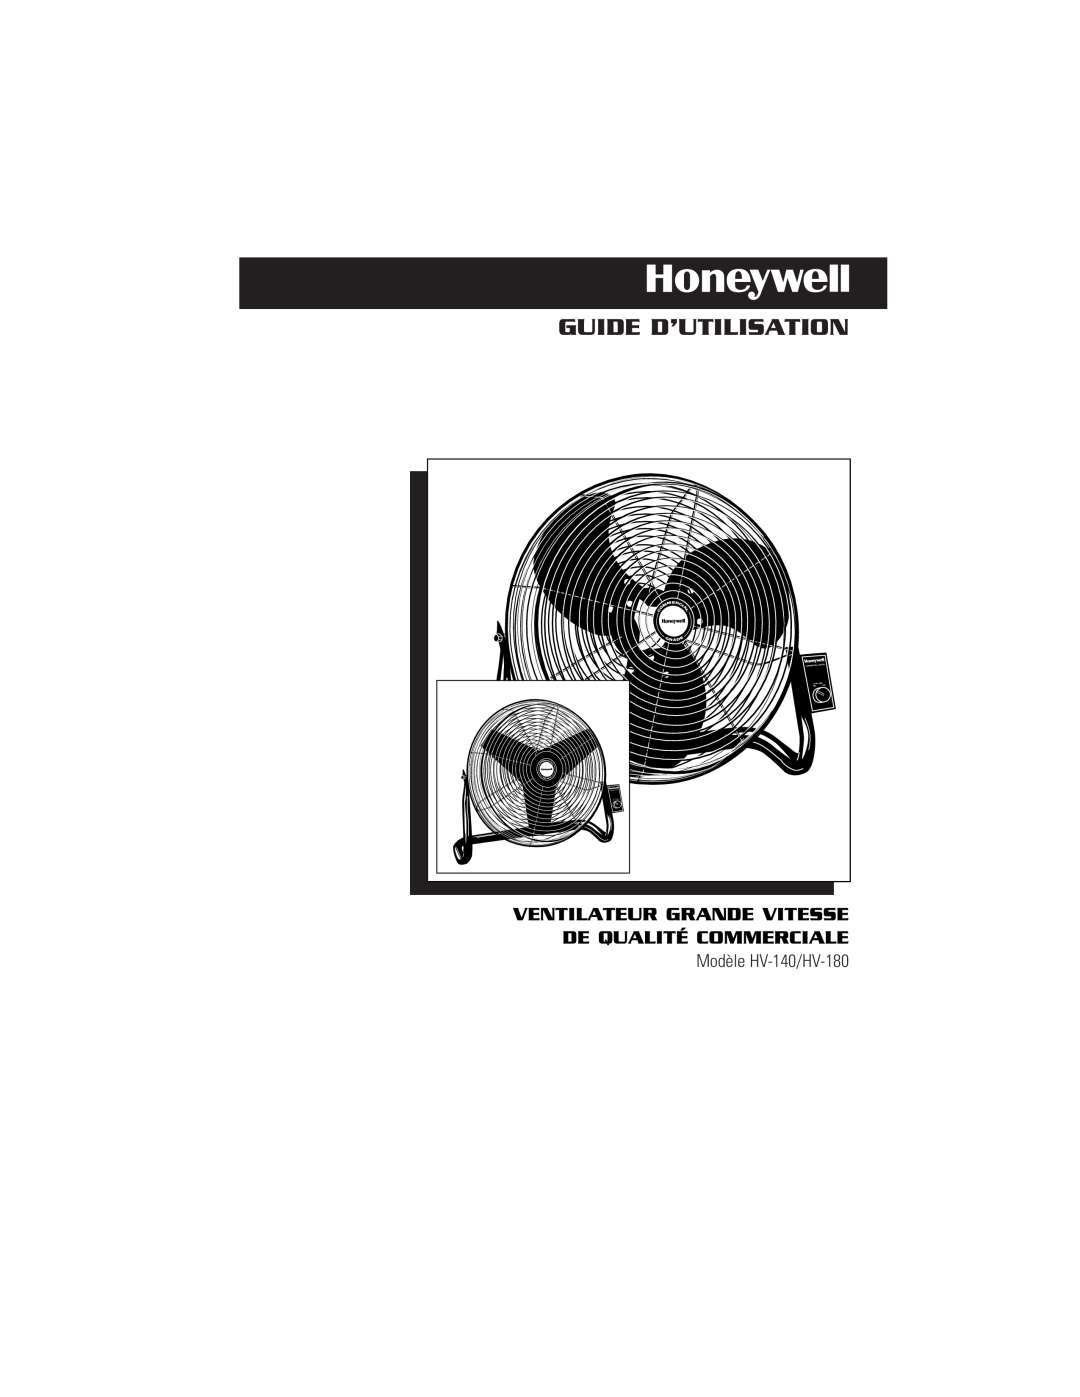 Honeywell HV140 Guide D’Utilisation, Ventilateur Grande Vitesse De Qualité Commerciale, Modèle HV-140/HV-180, Gr Ad E 